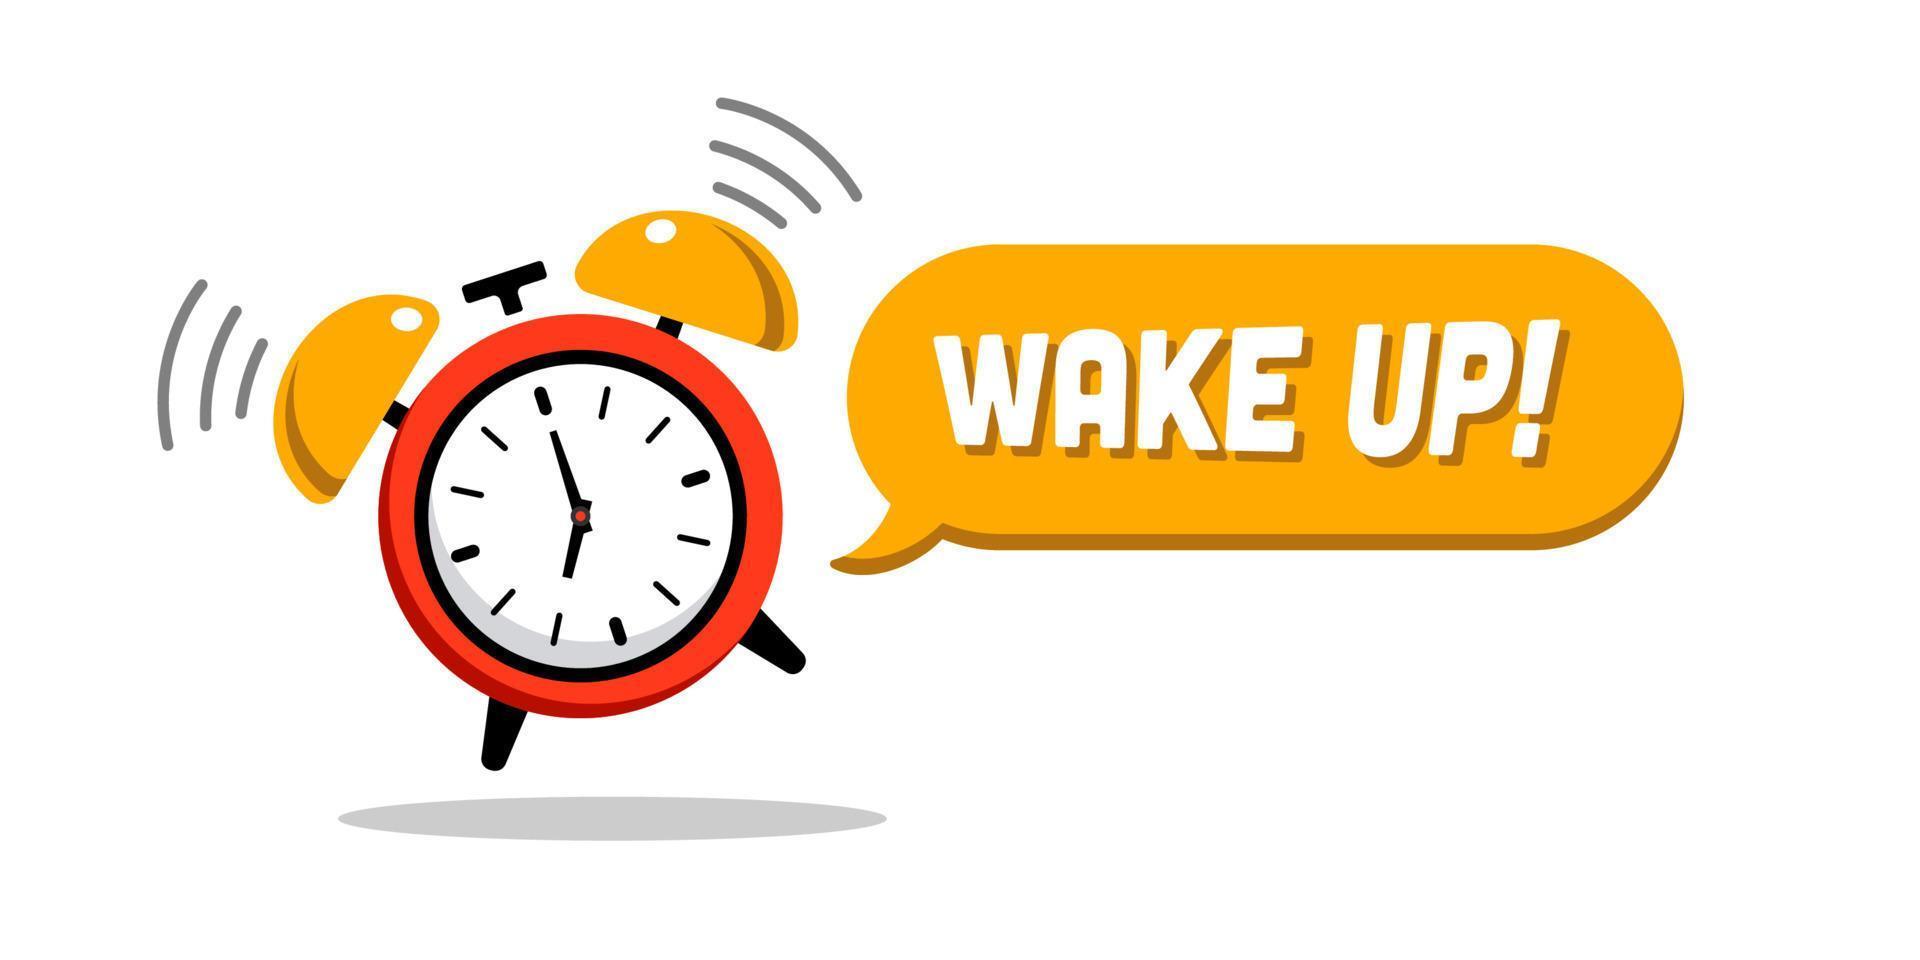 wakker worden omhoog ontwerp met rood en geel alarm klok. mooi zo ochtend, alarm klok rinkelen. alarm klok, klok. luid signaal naar wakker worden in de ochtend- van bed. krijgen omhoog in de ochtend- vector